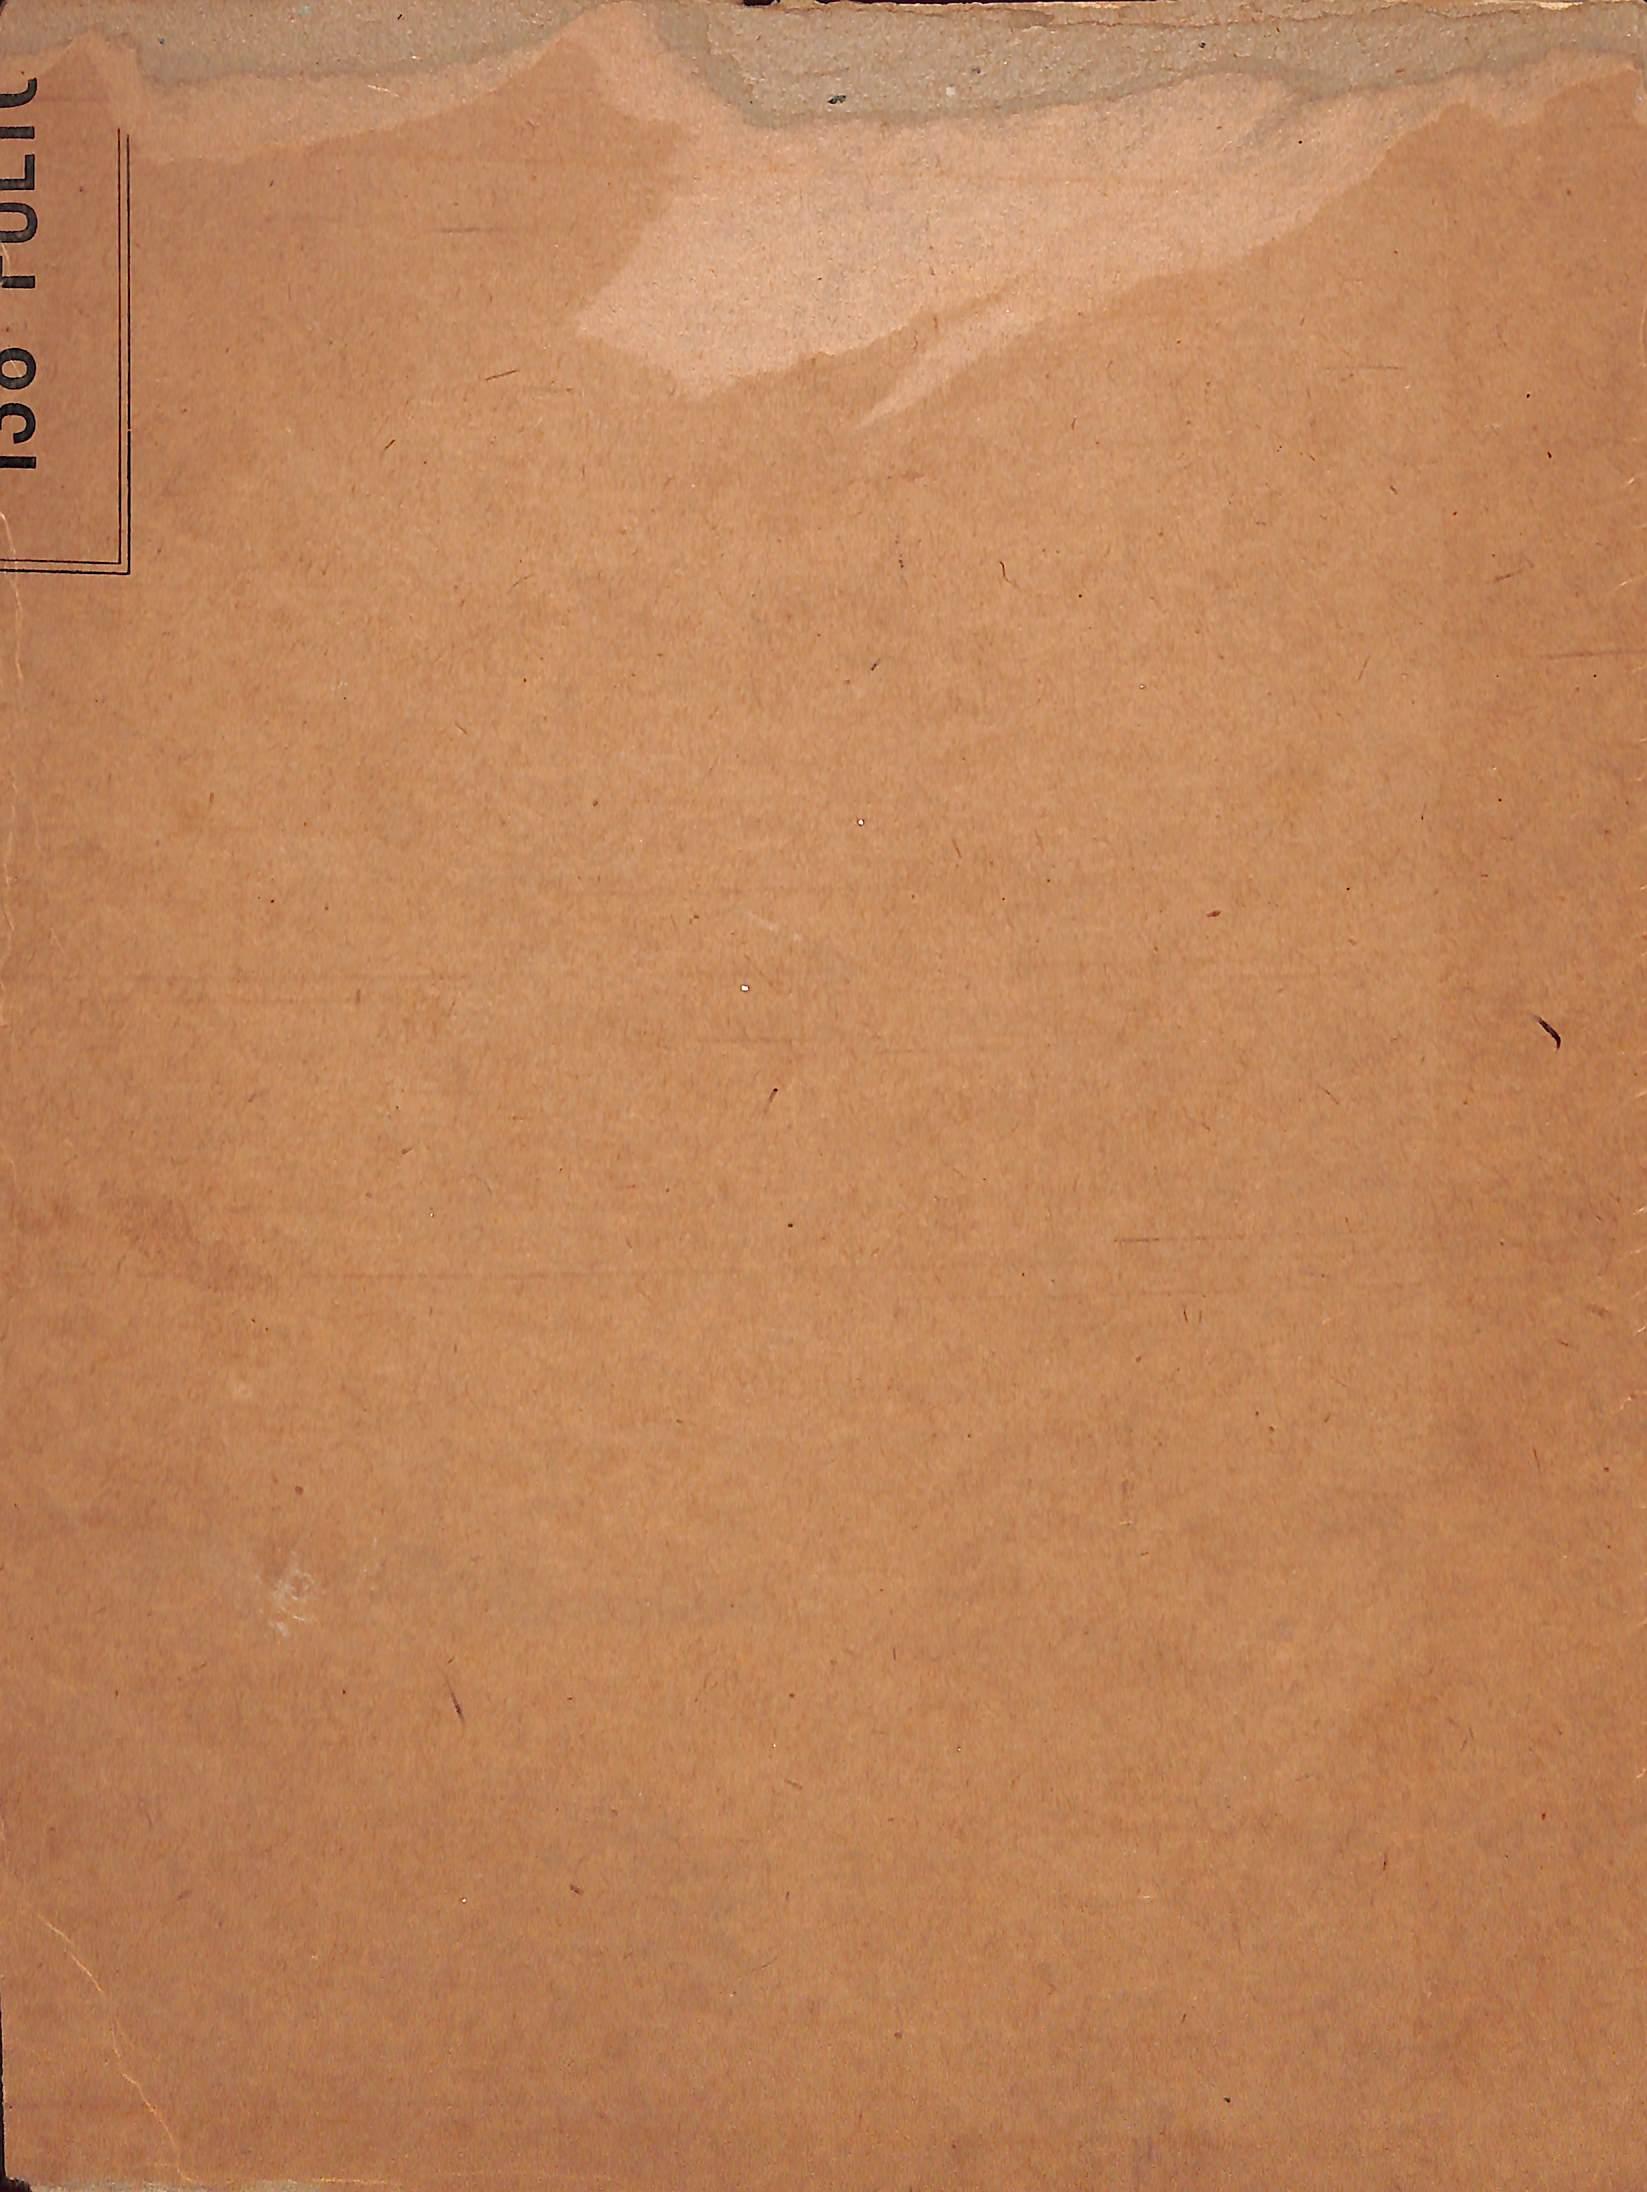 Sehr frühe Federzeichnung auf Karton von Paul Brown aus dem Jahr 1921
 
Größe: 10 3/4 